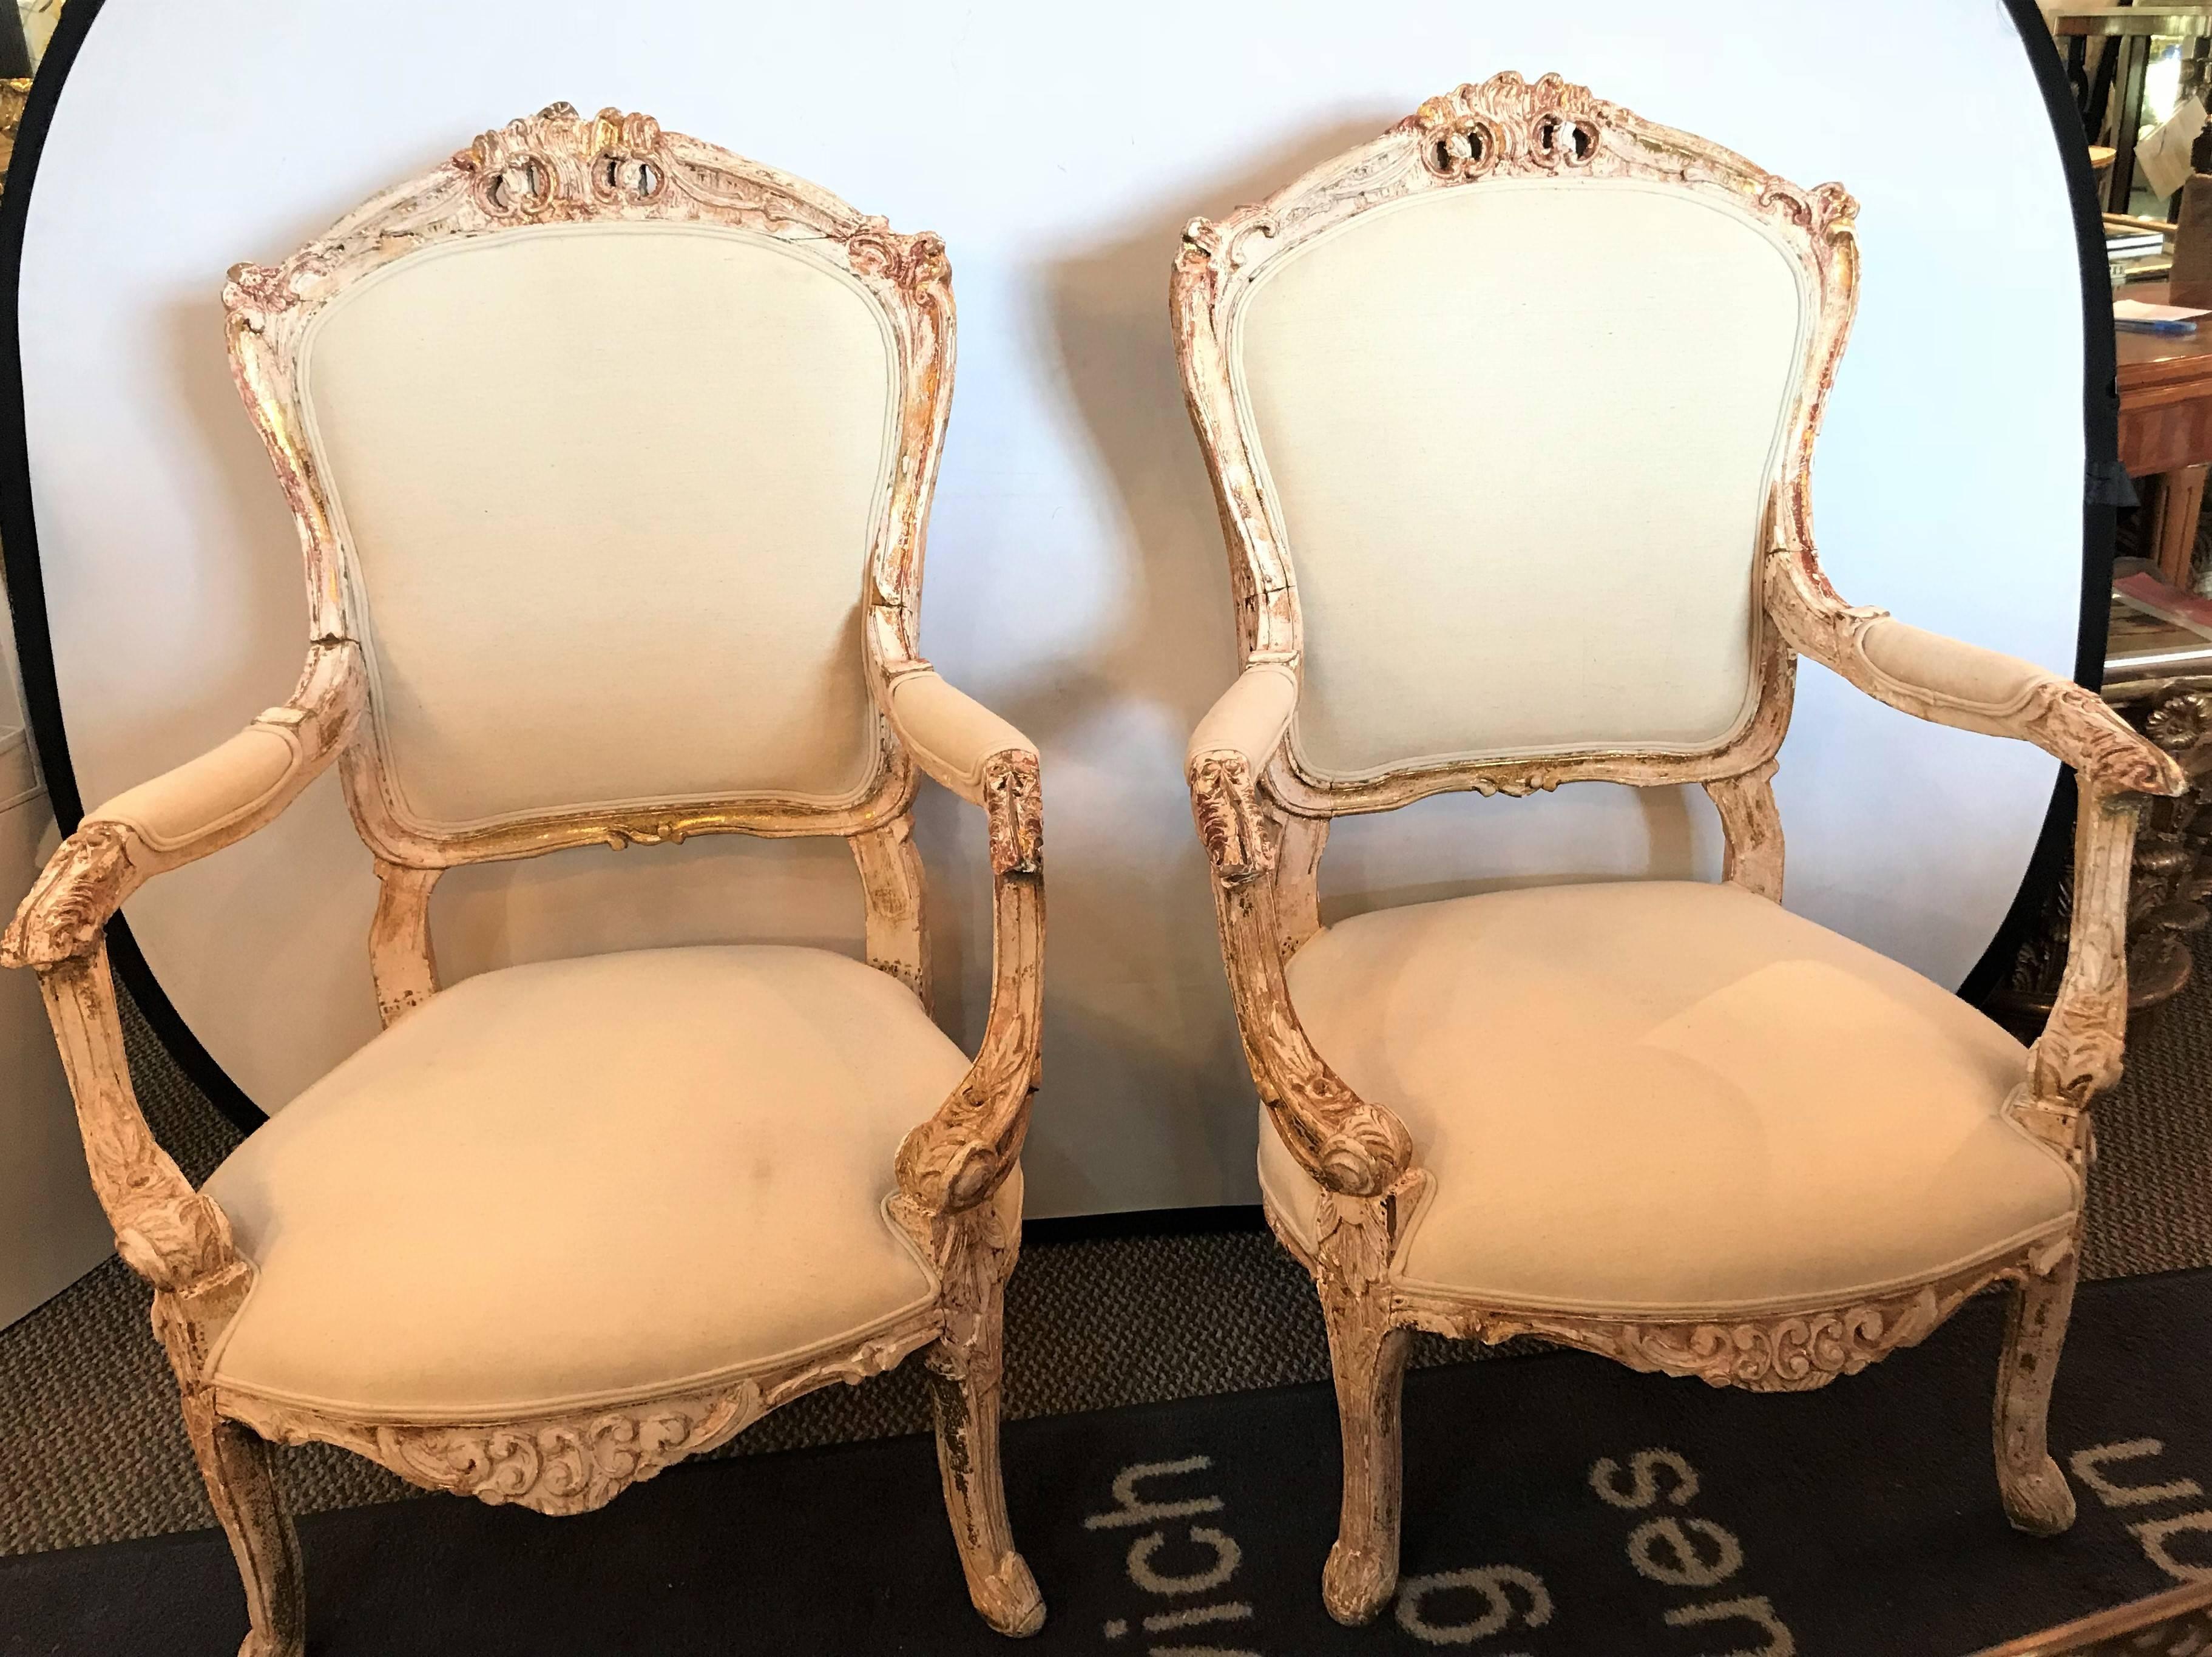 Une paire d'anciens fauteuils de style Louis XV dans des cadres peints à l'ancienne. Chacun d'entre eux possède un magnifique cadre ancien qui a été lavé avec un nouveau rembourrage en toile de jute. 
Lxx.